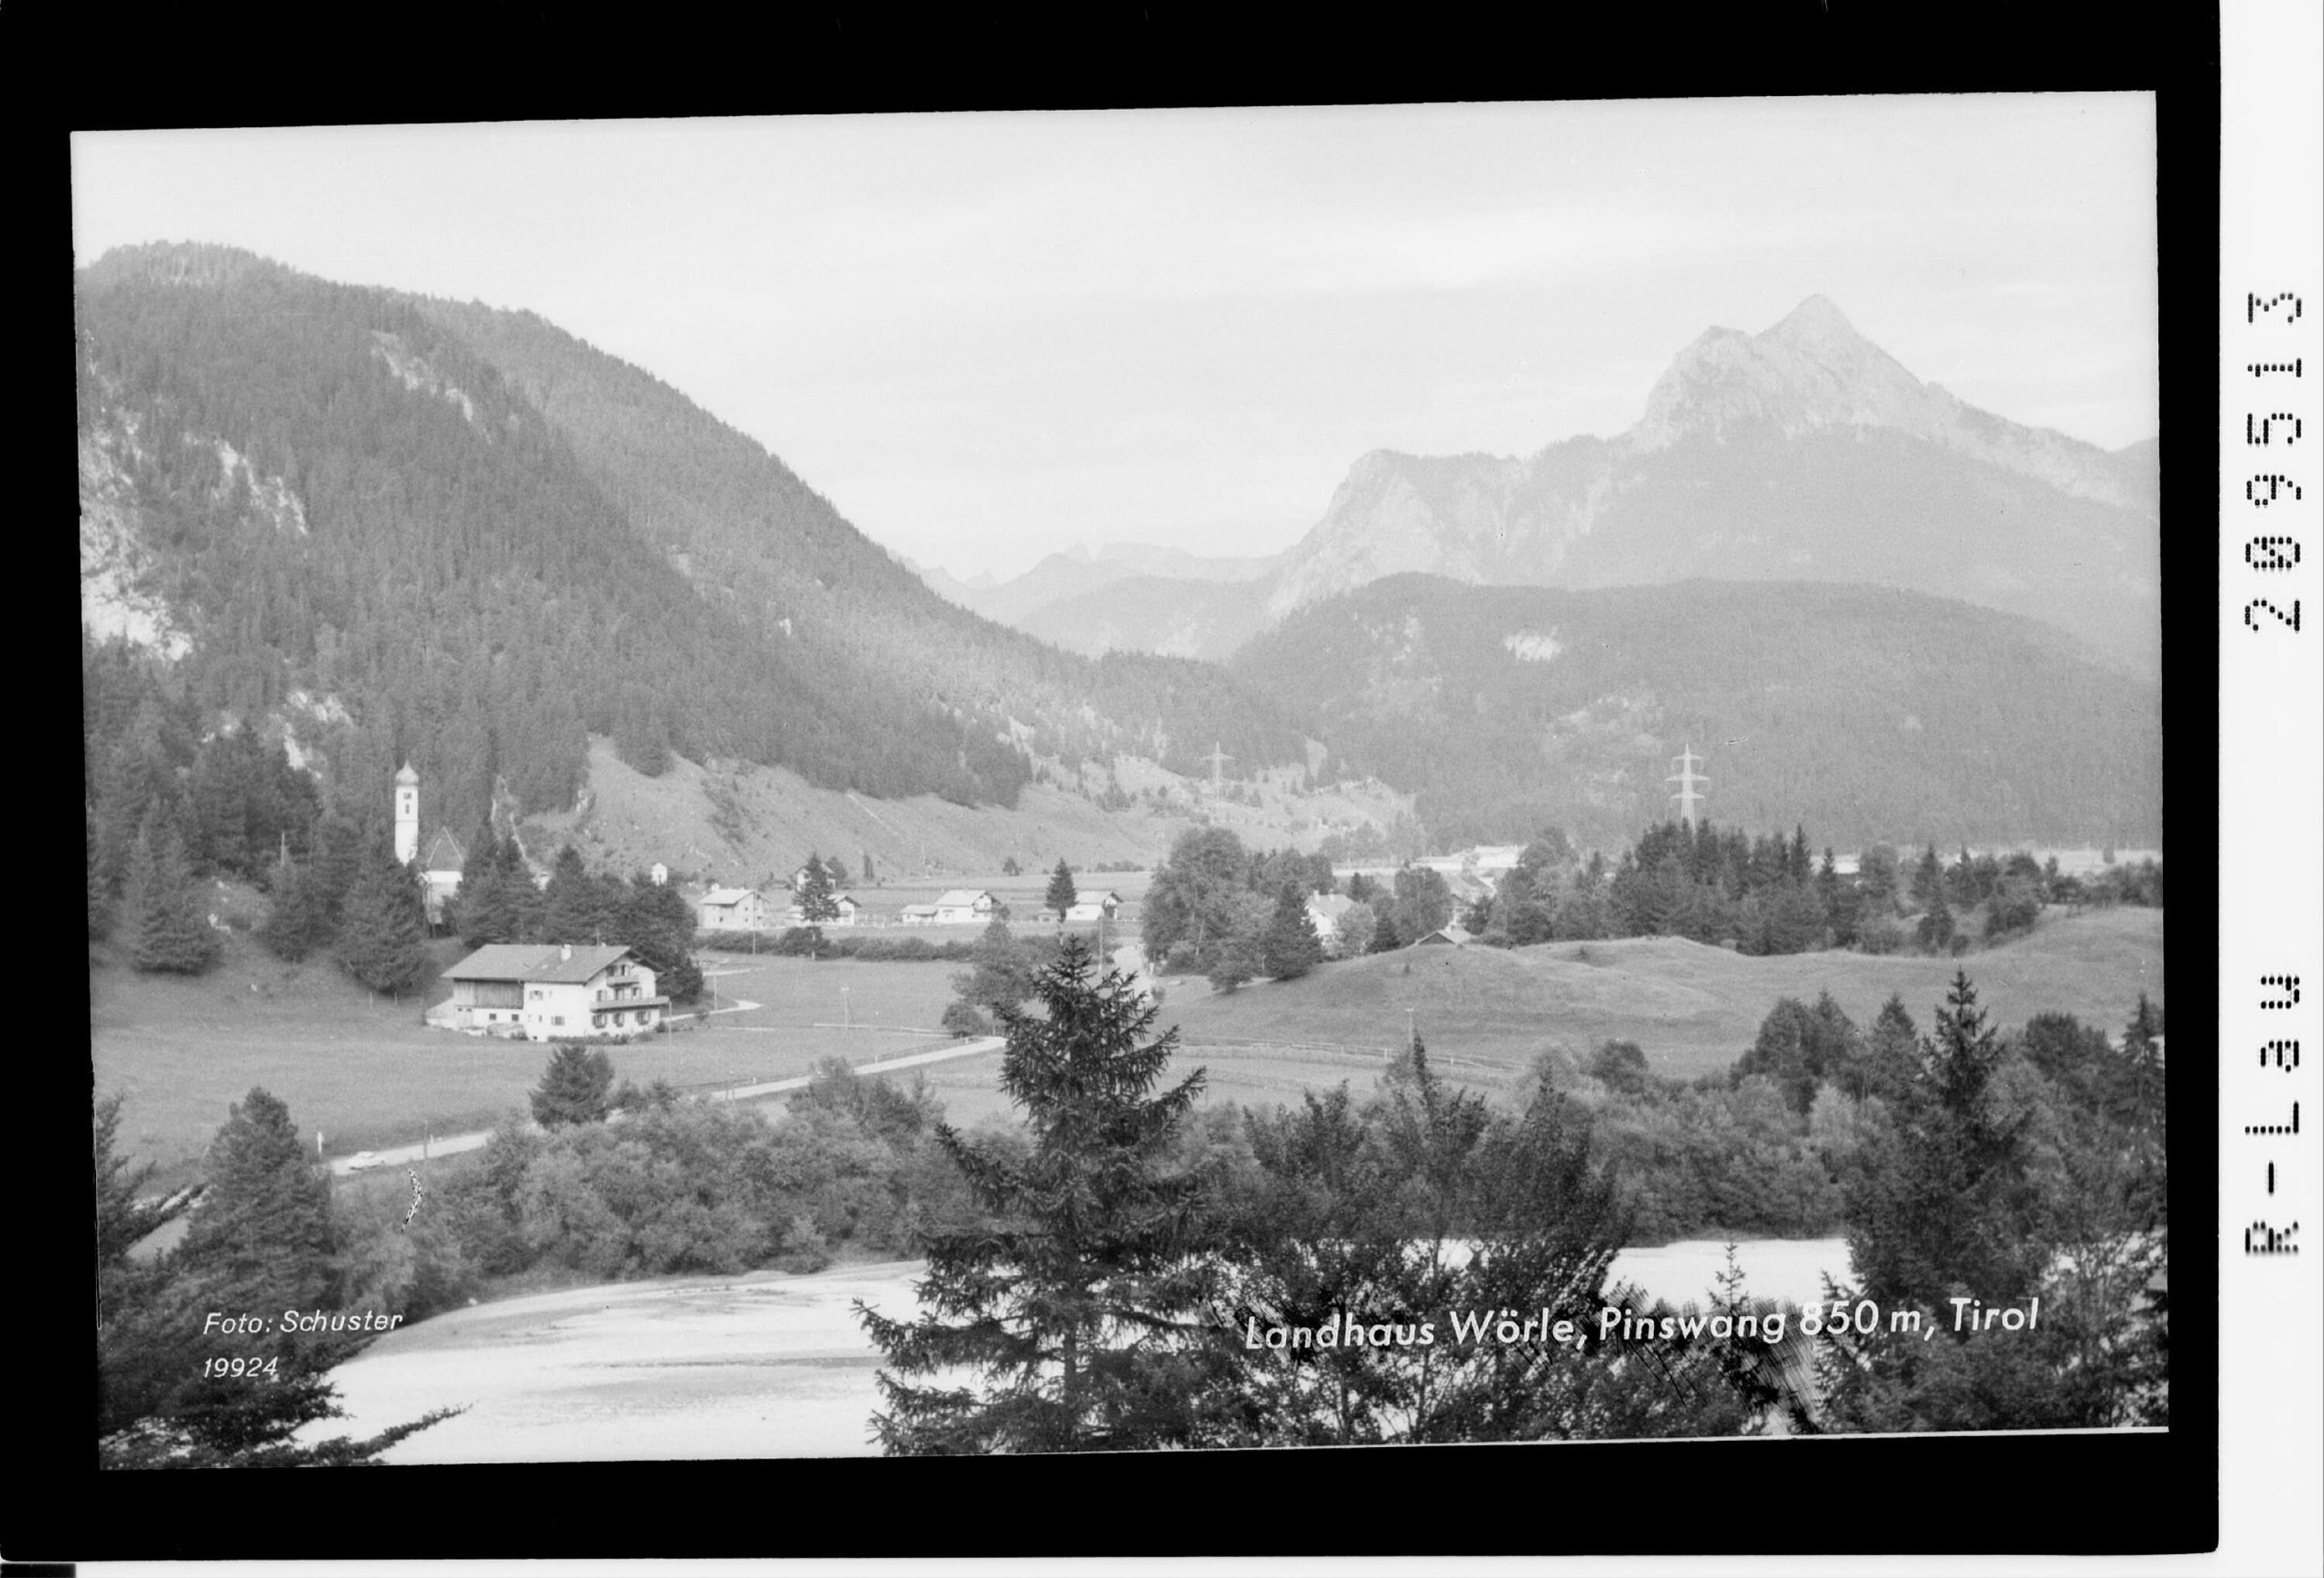 Landhaus Wörle, Pinswang 850 m, Tirol></div>


    <hr>
    <div class=